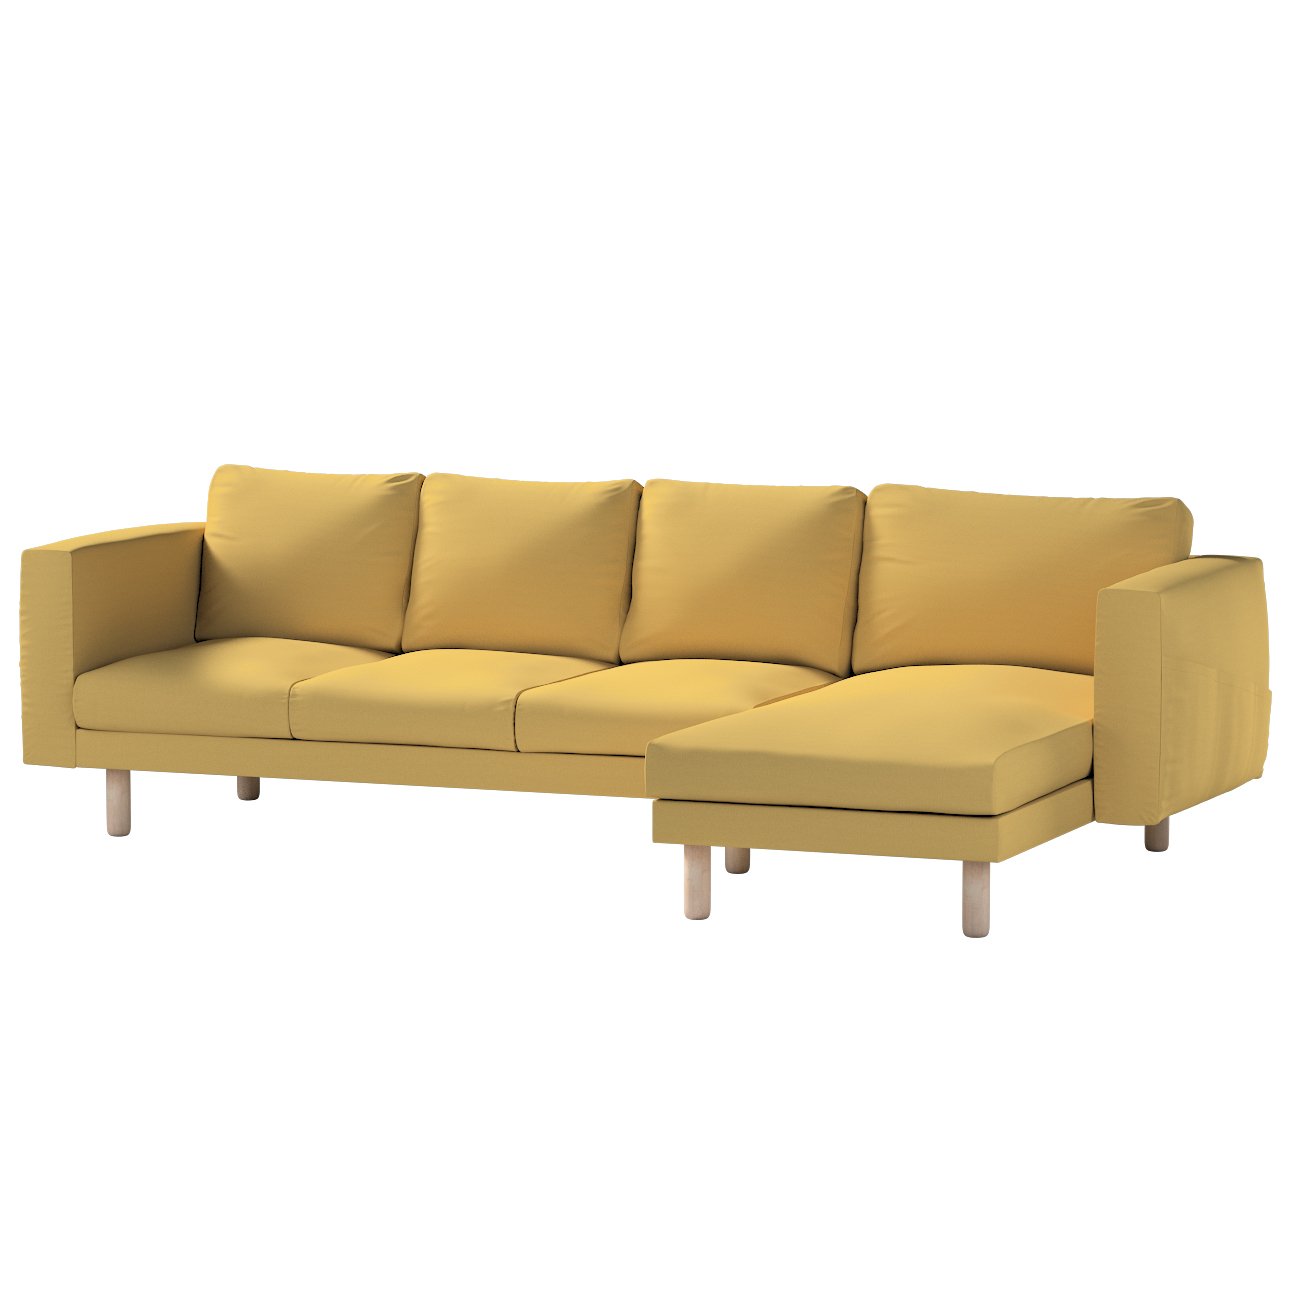 Dekoria Norsborg poťah na sedačku s ležadlom - 4 os., matná žltá, 291 x 88/157 x 85 cm, Cotton Panama, 702-41